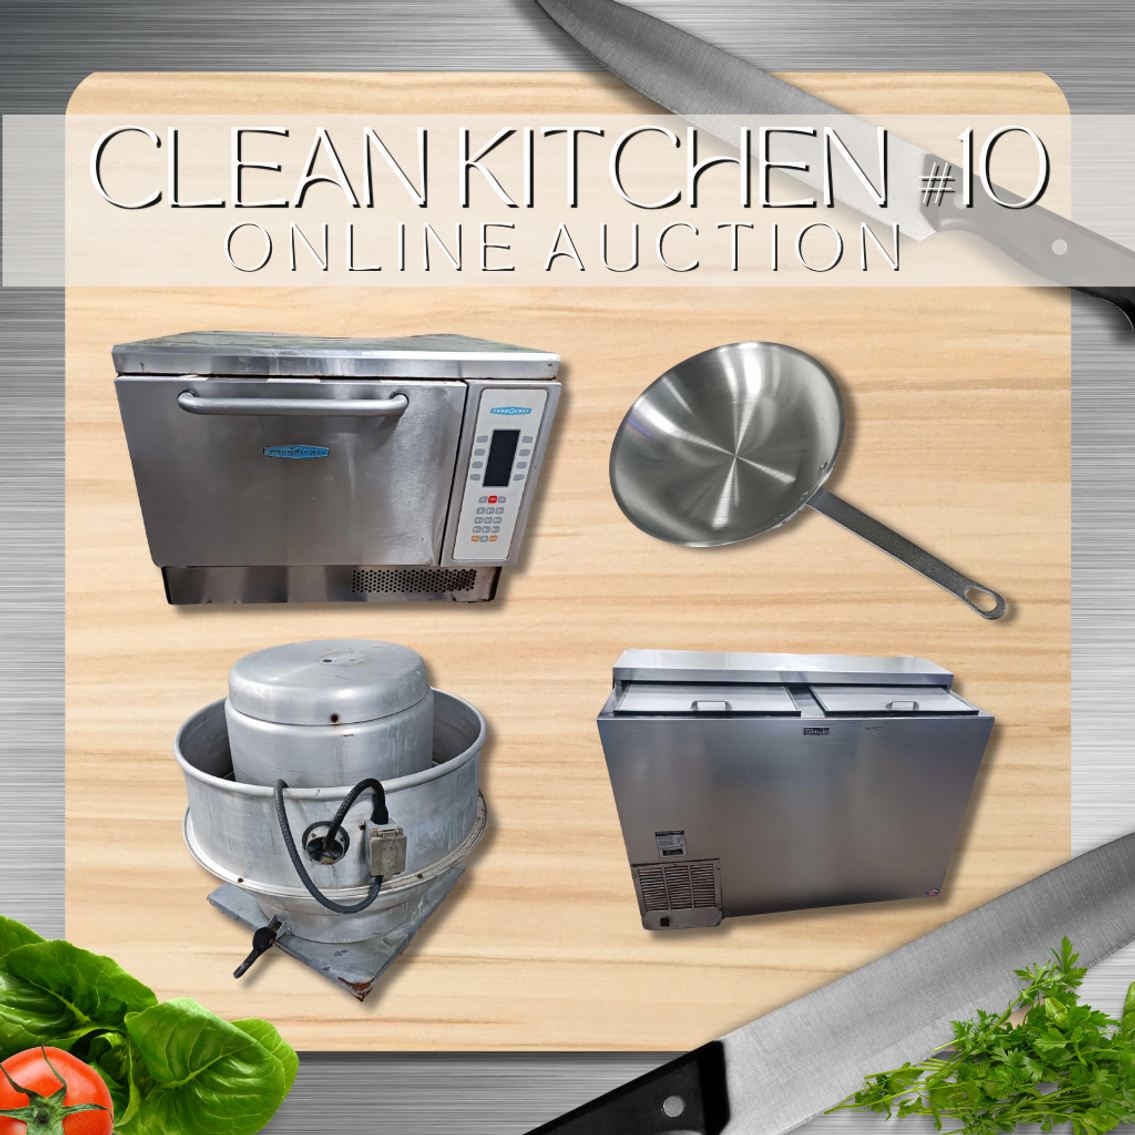 Clean Kitchen # 10